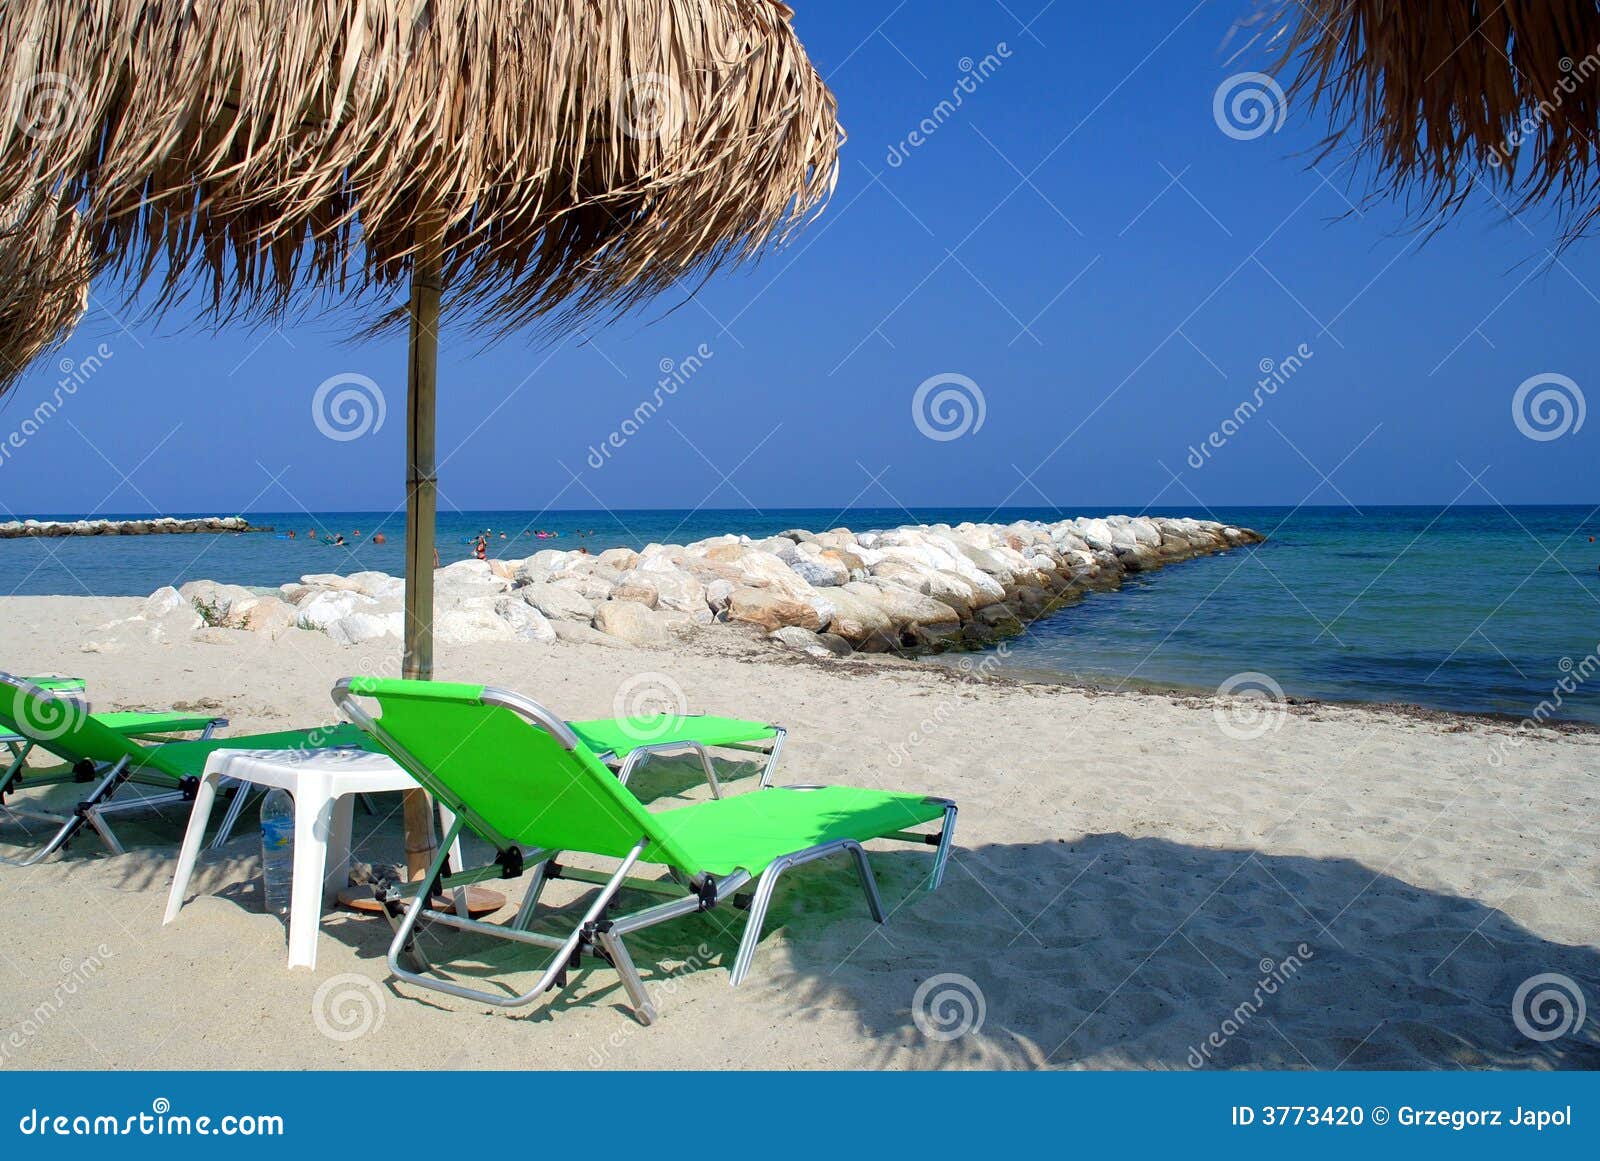 palm parasol at summer beach